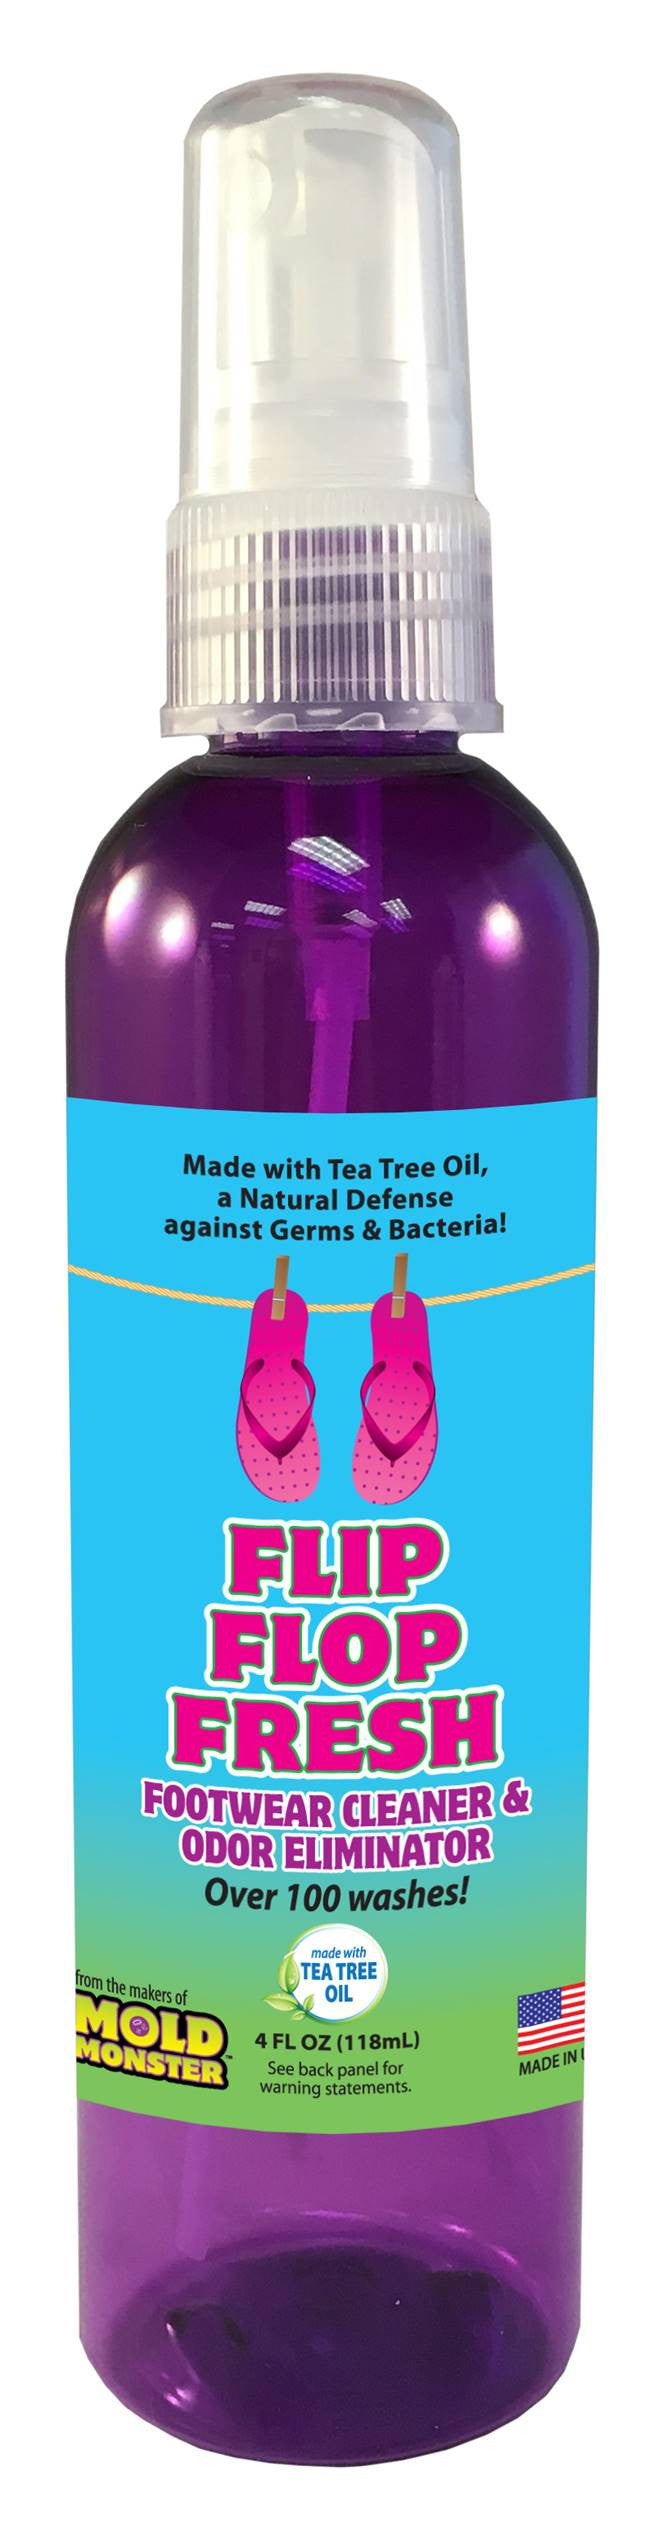 Flip Flop Fresh - Footwear Cleaner and Odor Eliminator, 4 oz. bottle